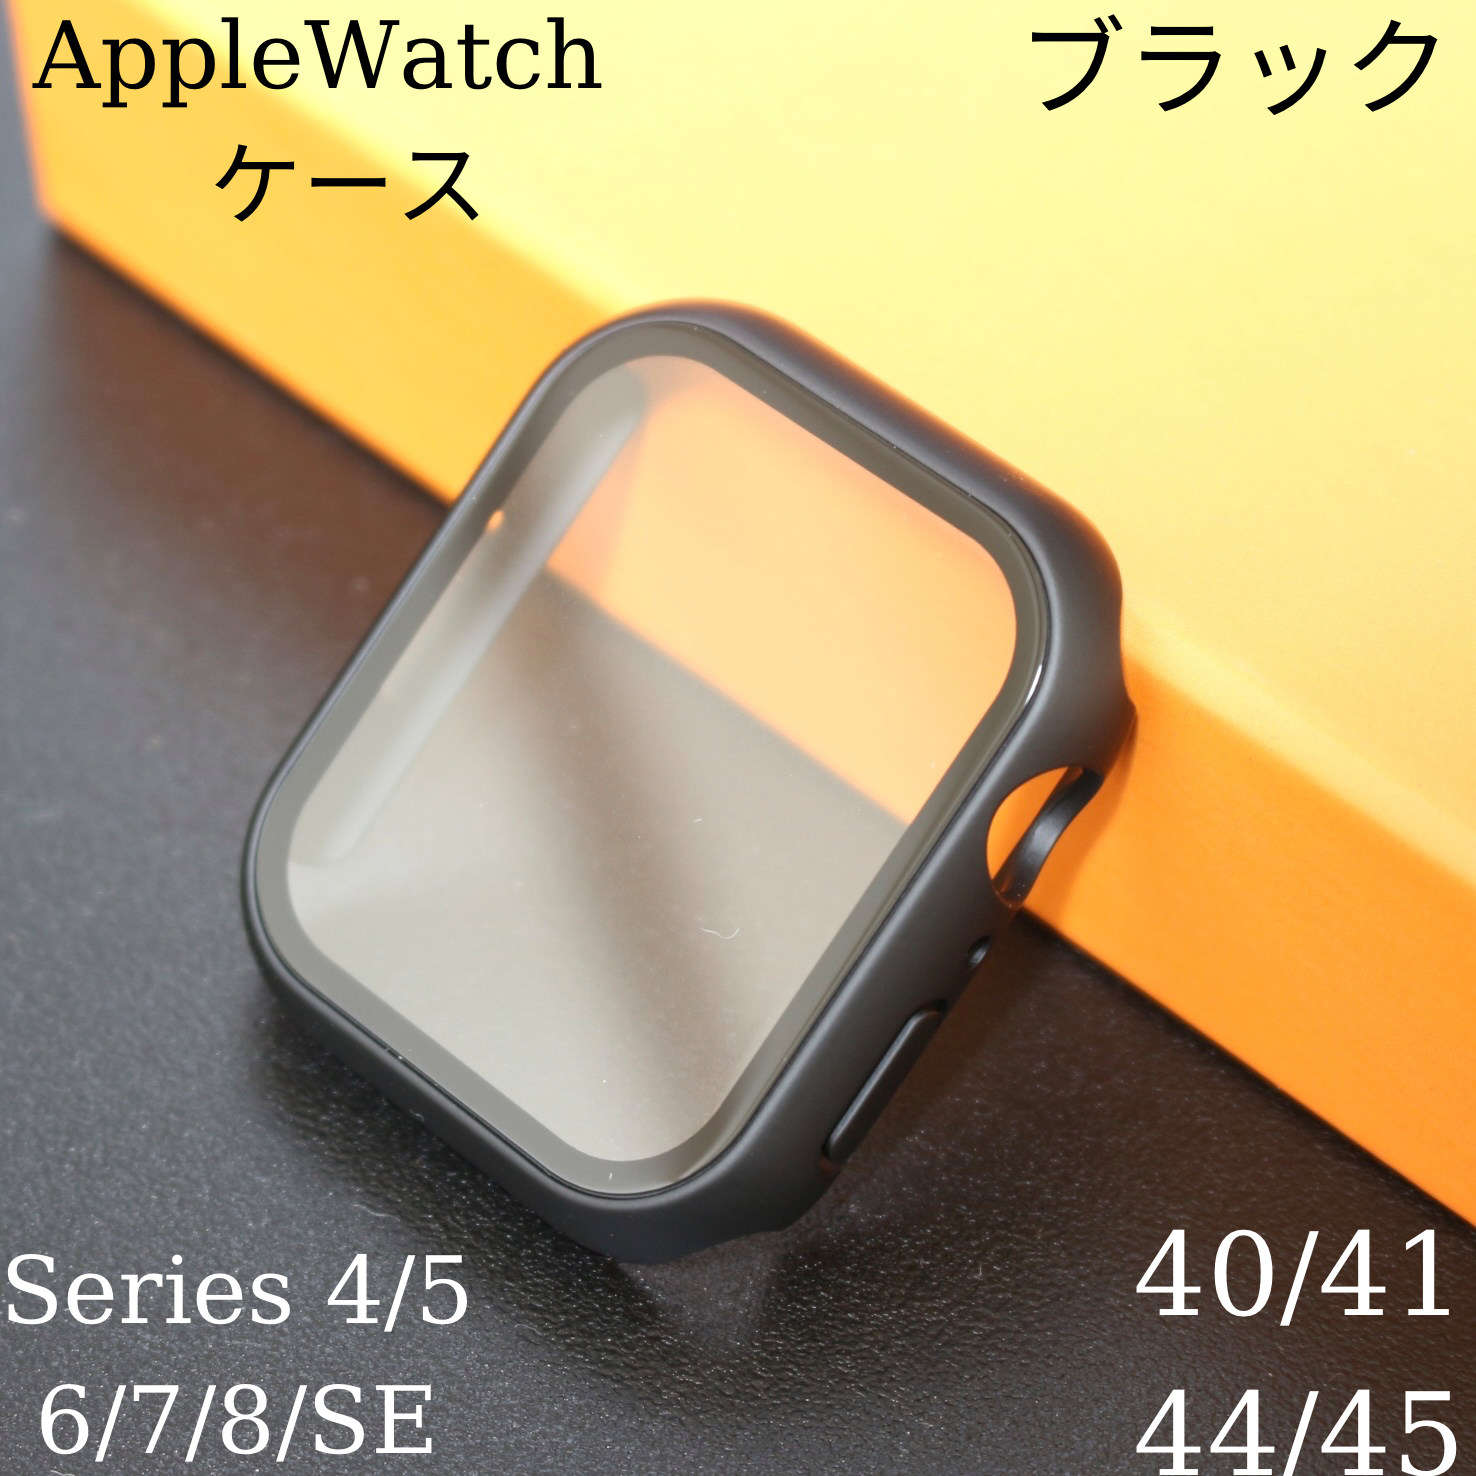 AppleWatchカバー白42mm SE アップルウォッチ